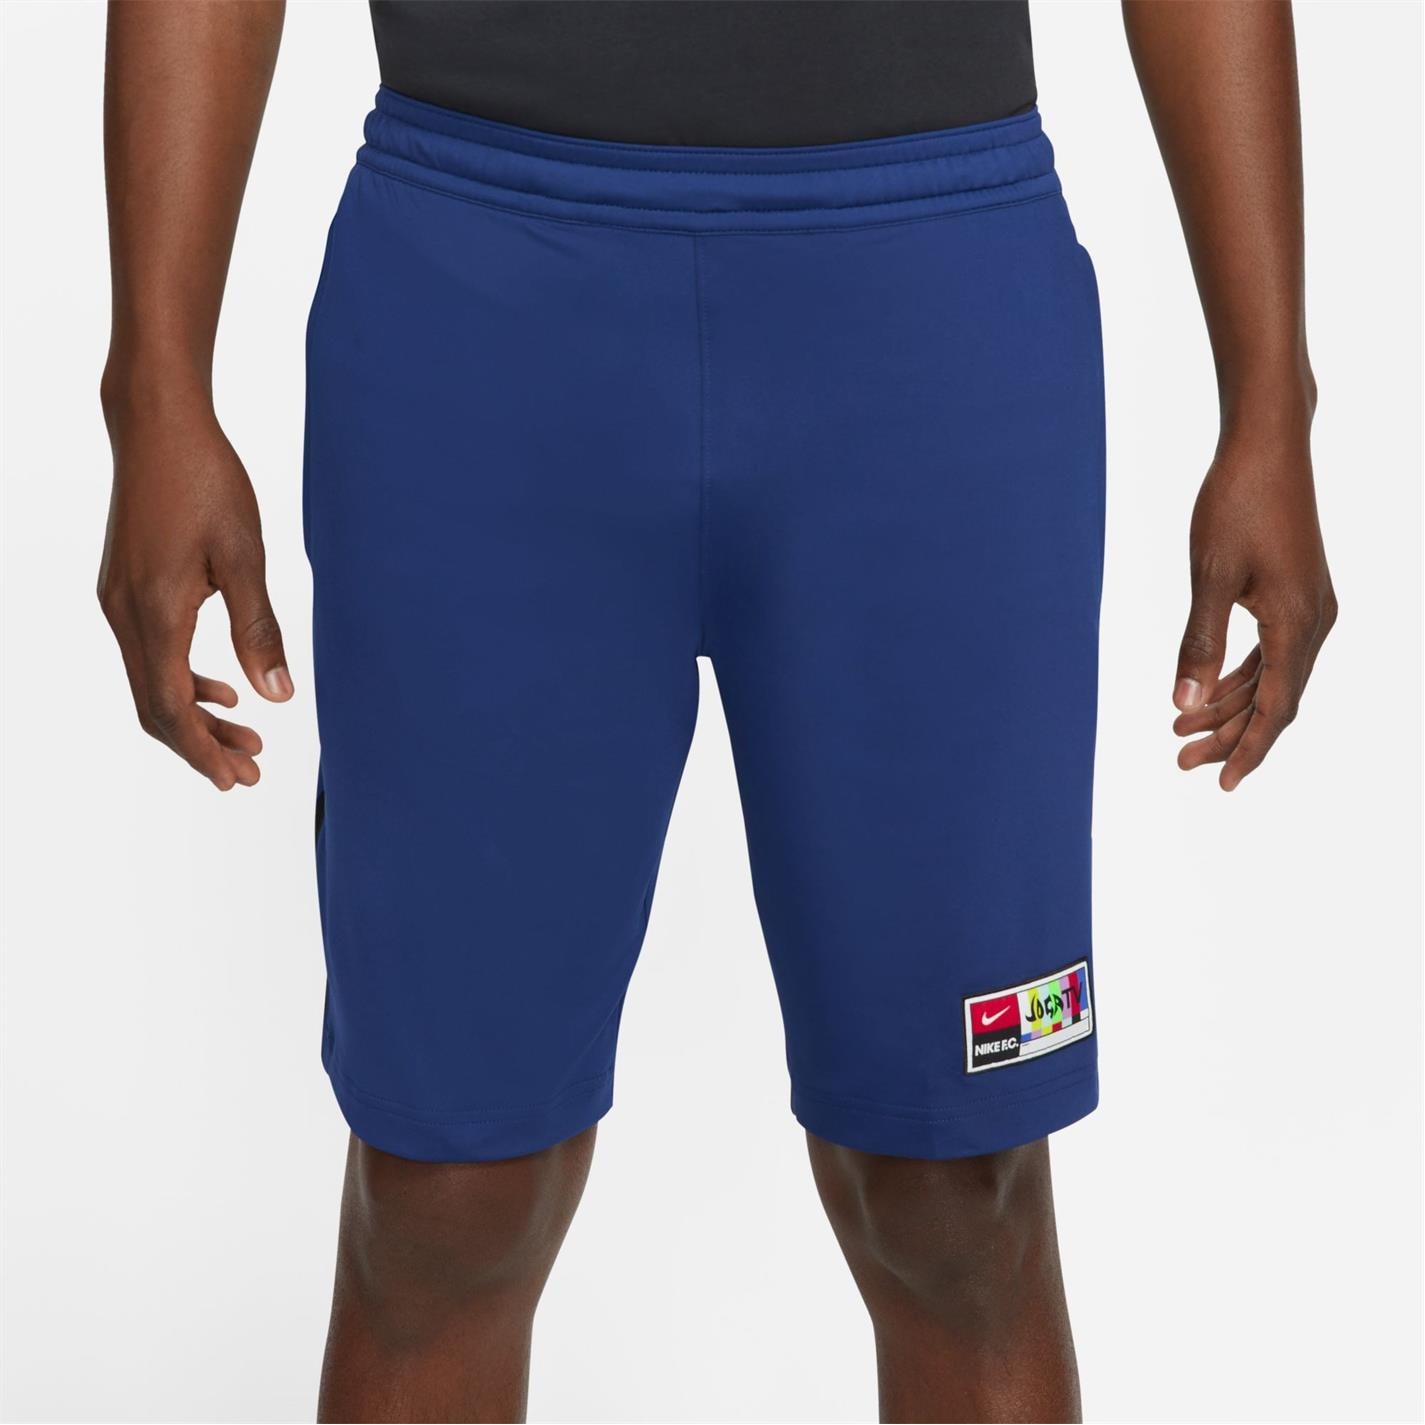 Pantaloni scurti Nike FC pentru Barbati bluv negru alb